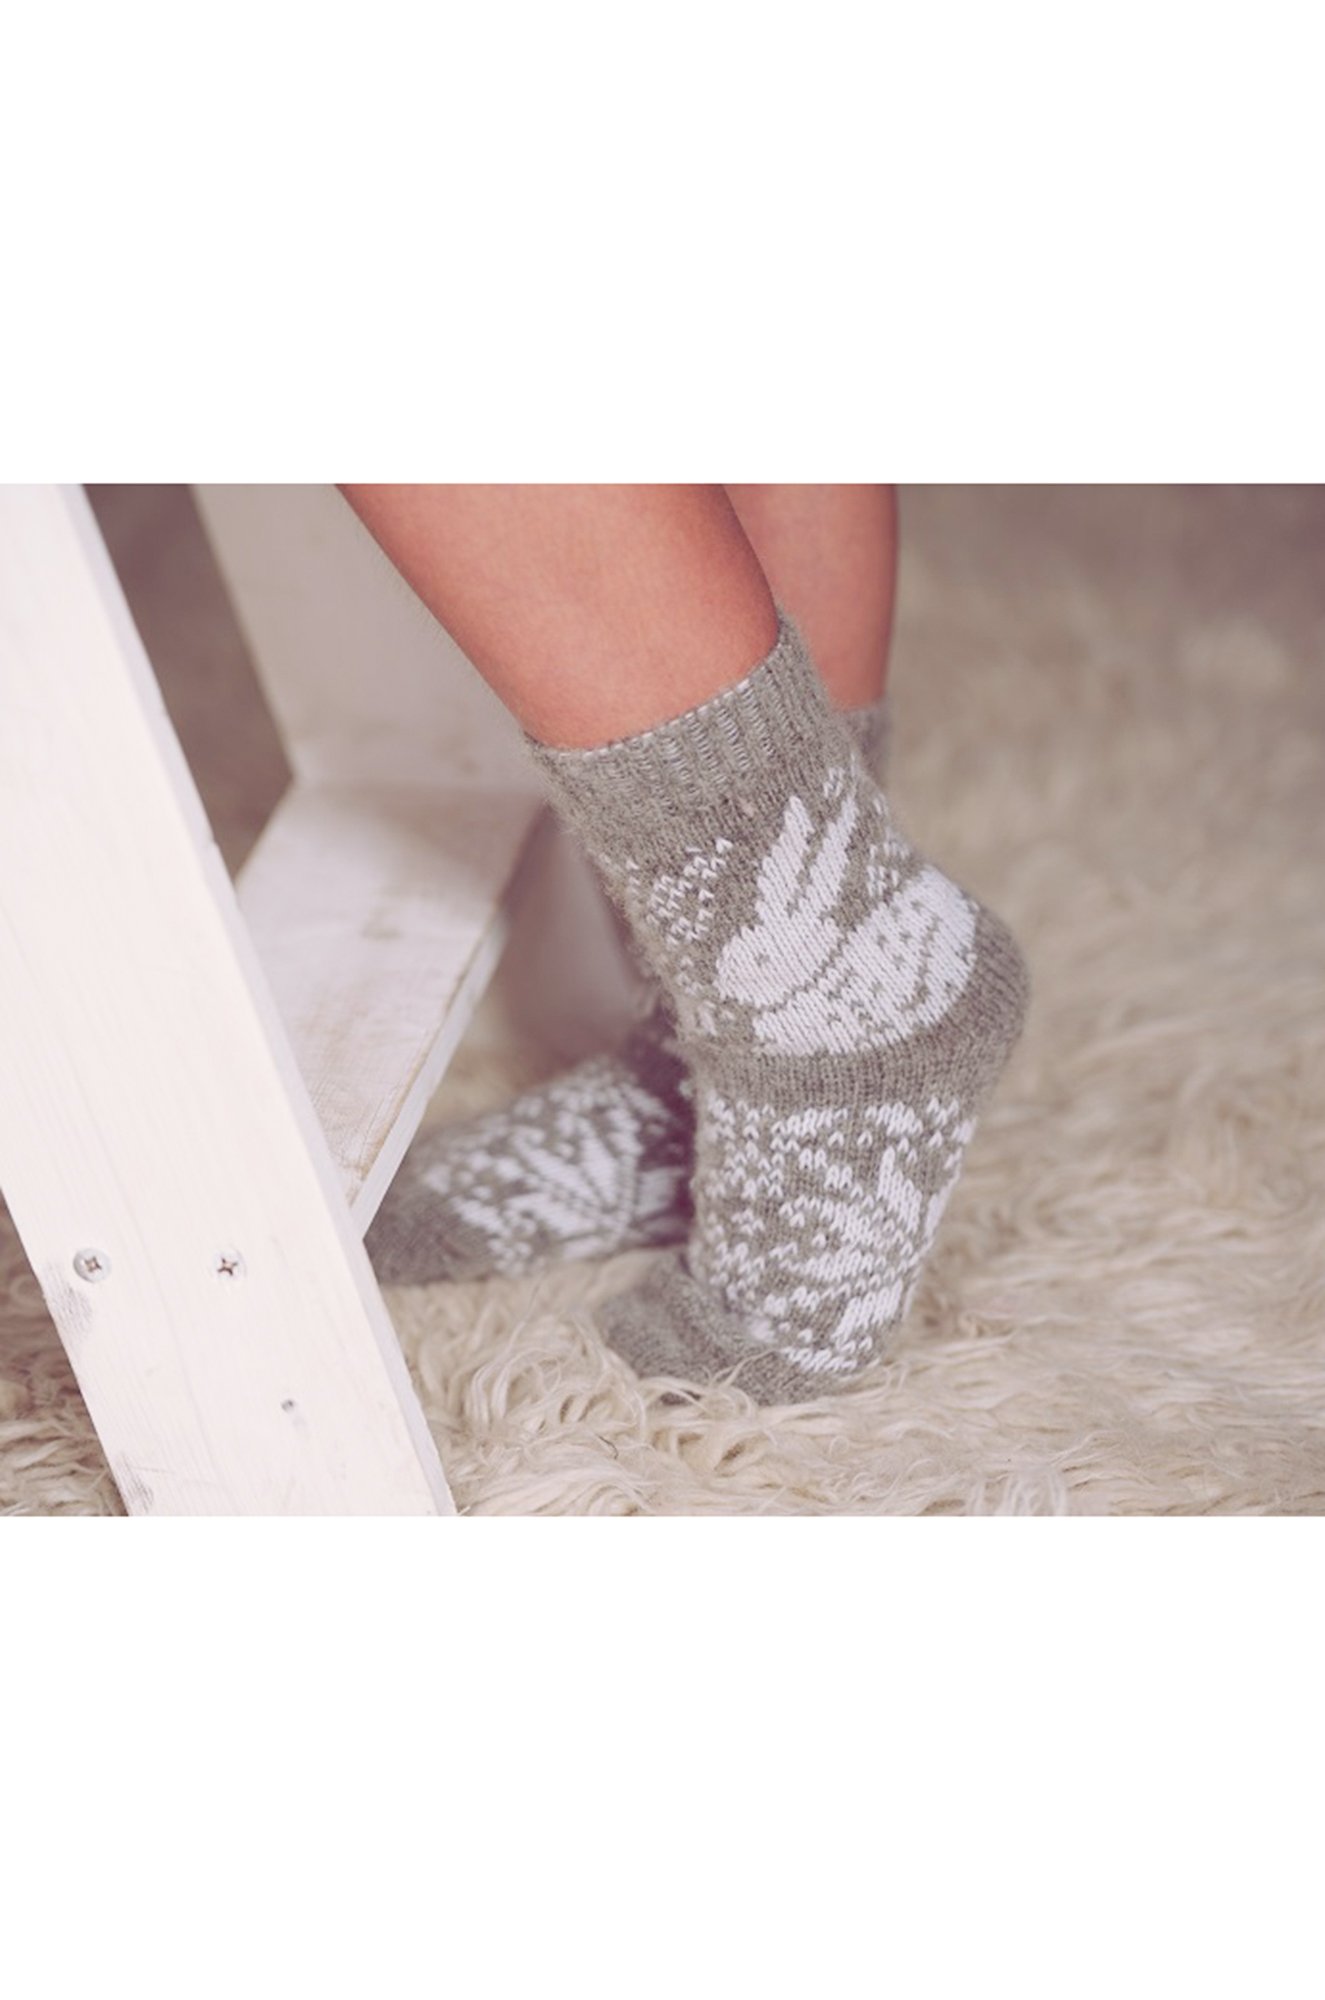 Носки для девочки шерстяные Бабушкины носки